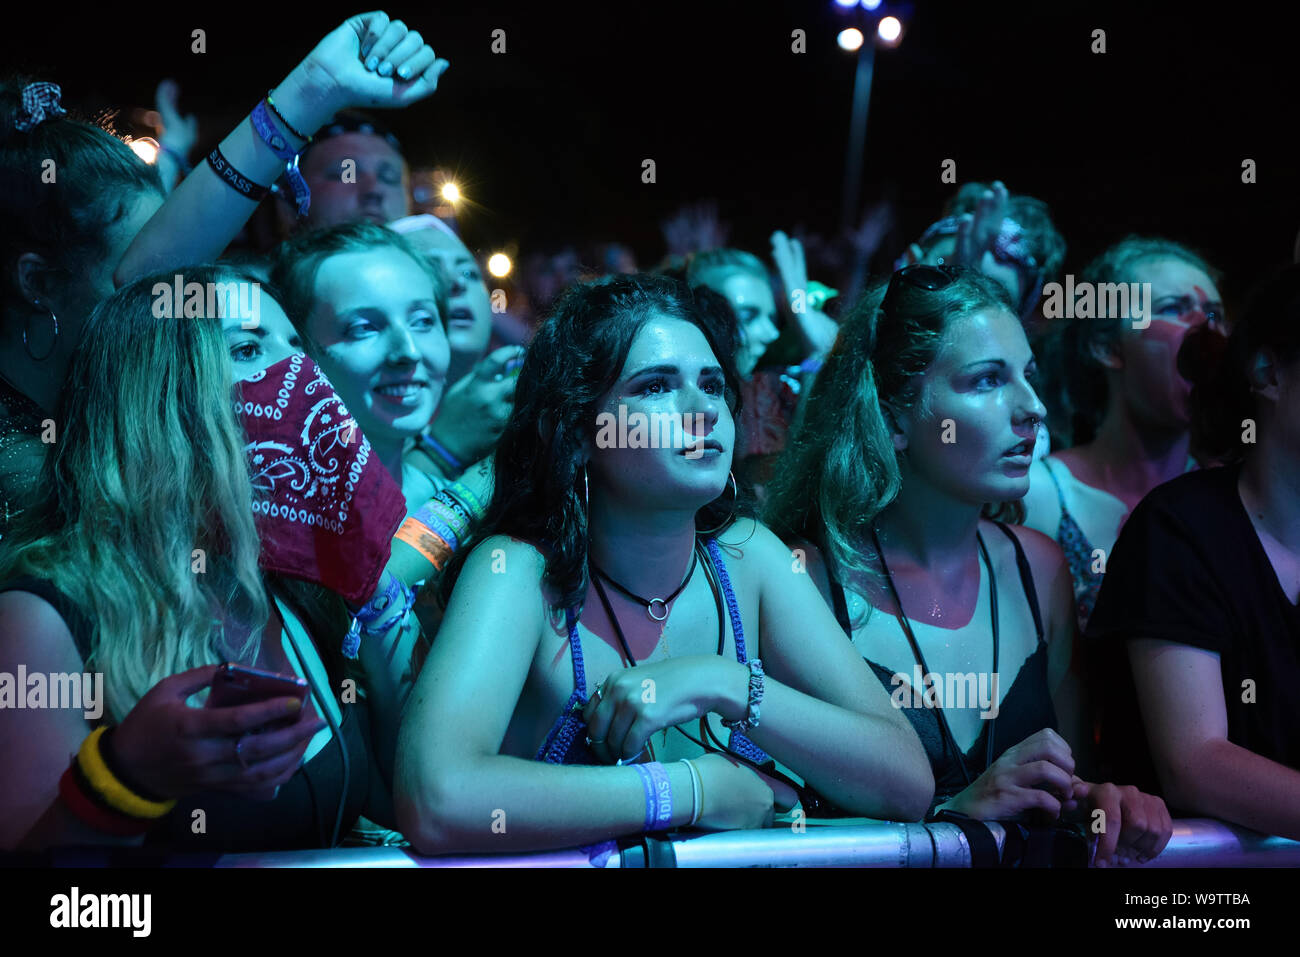 BENICASSIM, SPAGNA - LUGLIO 18: La folla in un concerto al FIB (Festival Internacional de Benicassim) Festival il 18 luglio 2019 a Benicassim, Spagna. Foto Stock